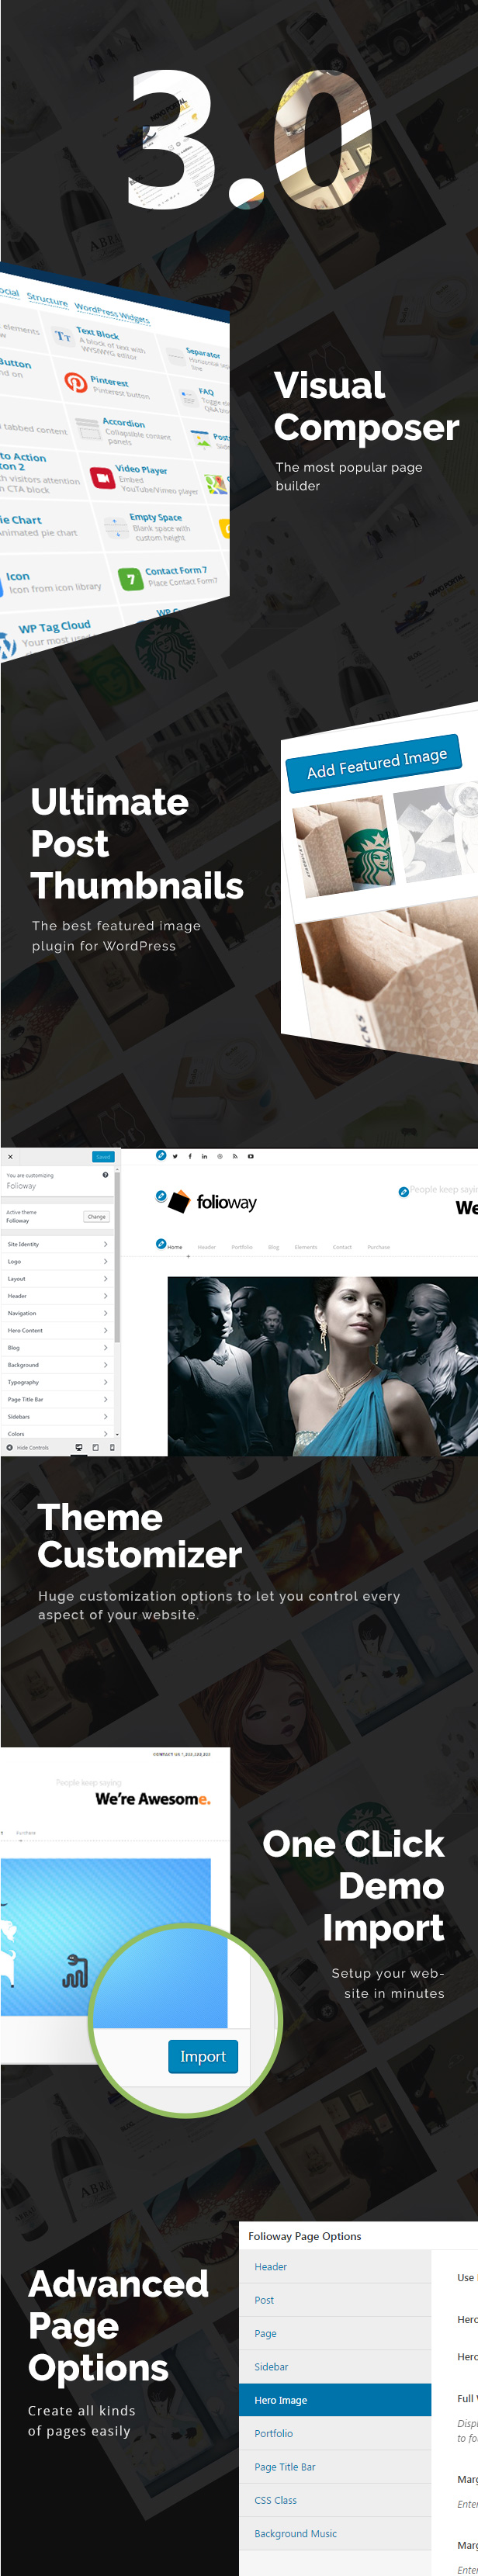 Folioway - Premium Portfolio WordPress Theme - 1